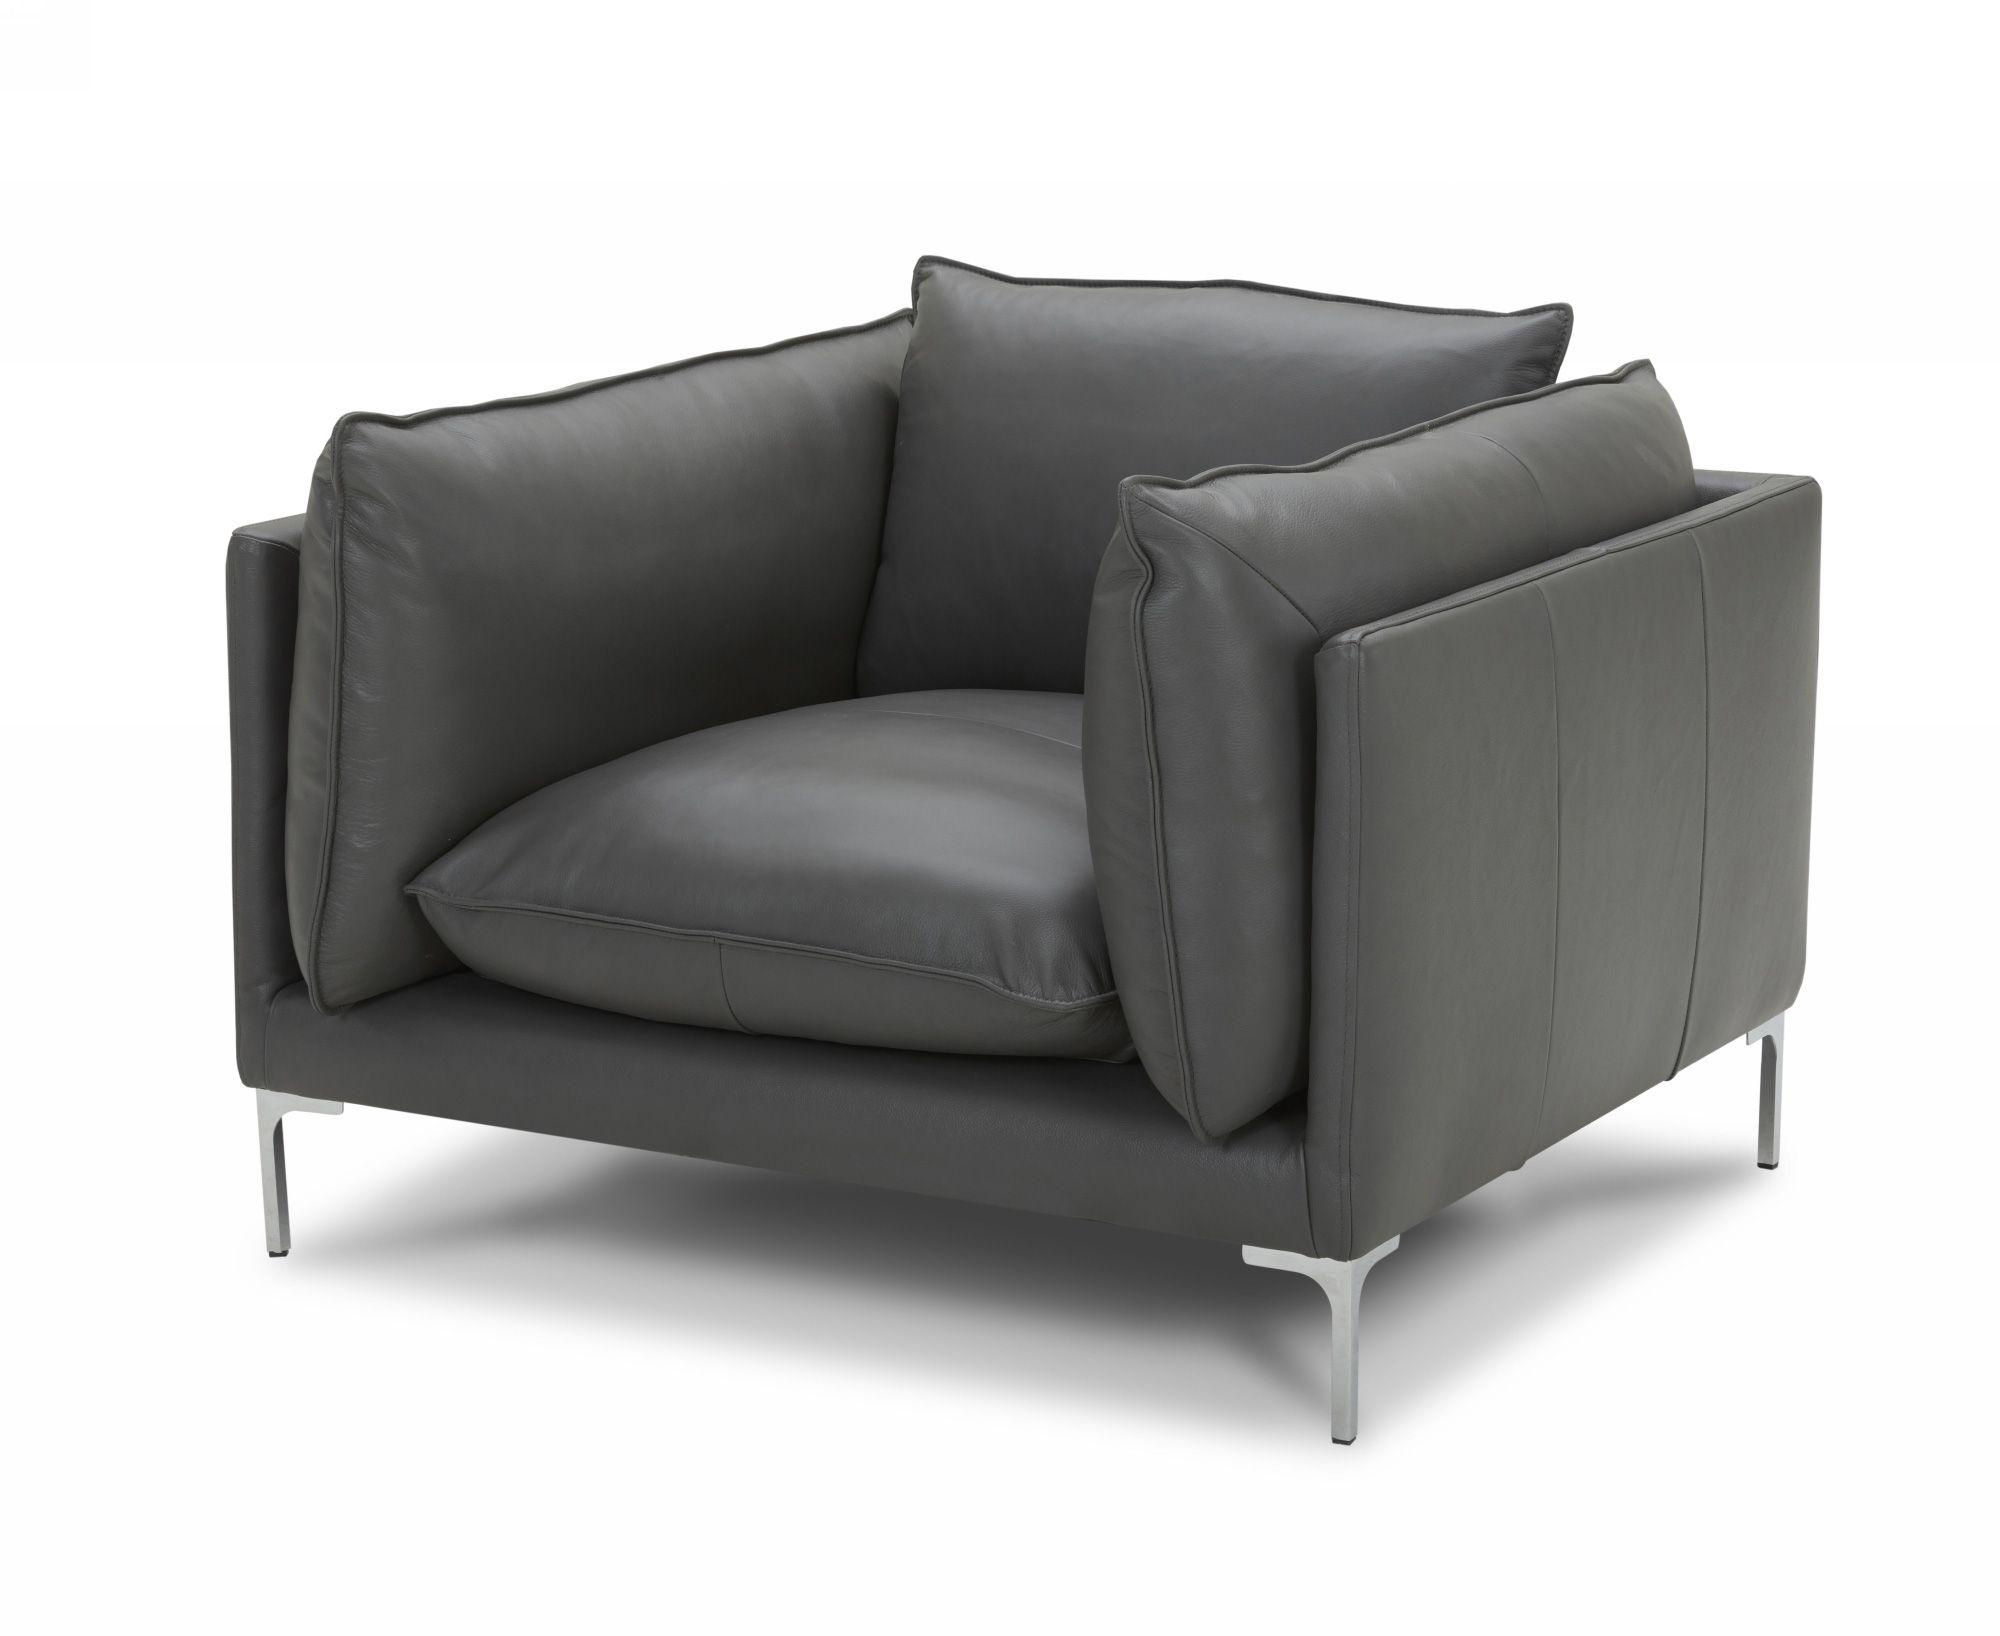 Contemporary, Modern Arm Chair VGKKKF2627-L2925-CHR VGKKKF2627-L2925-CHR in Gray Full Leather